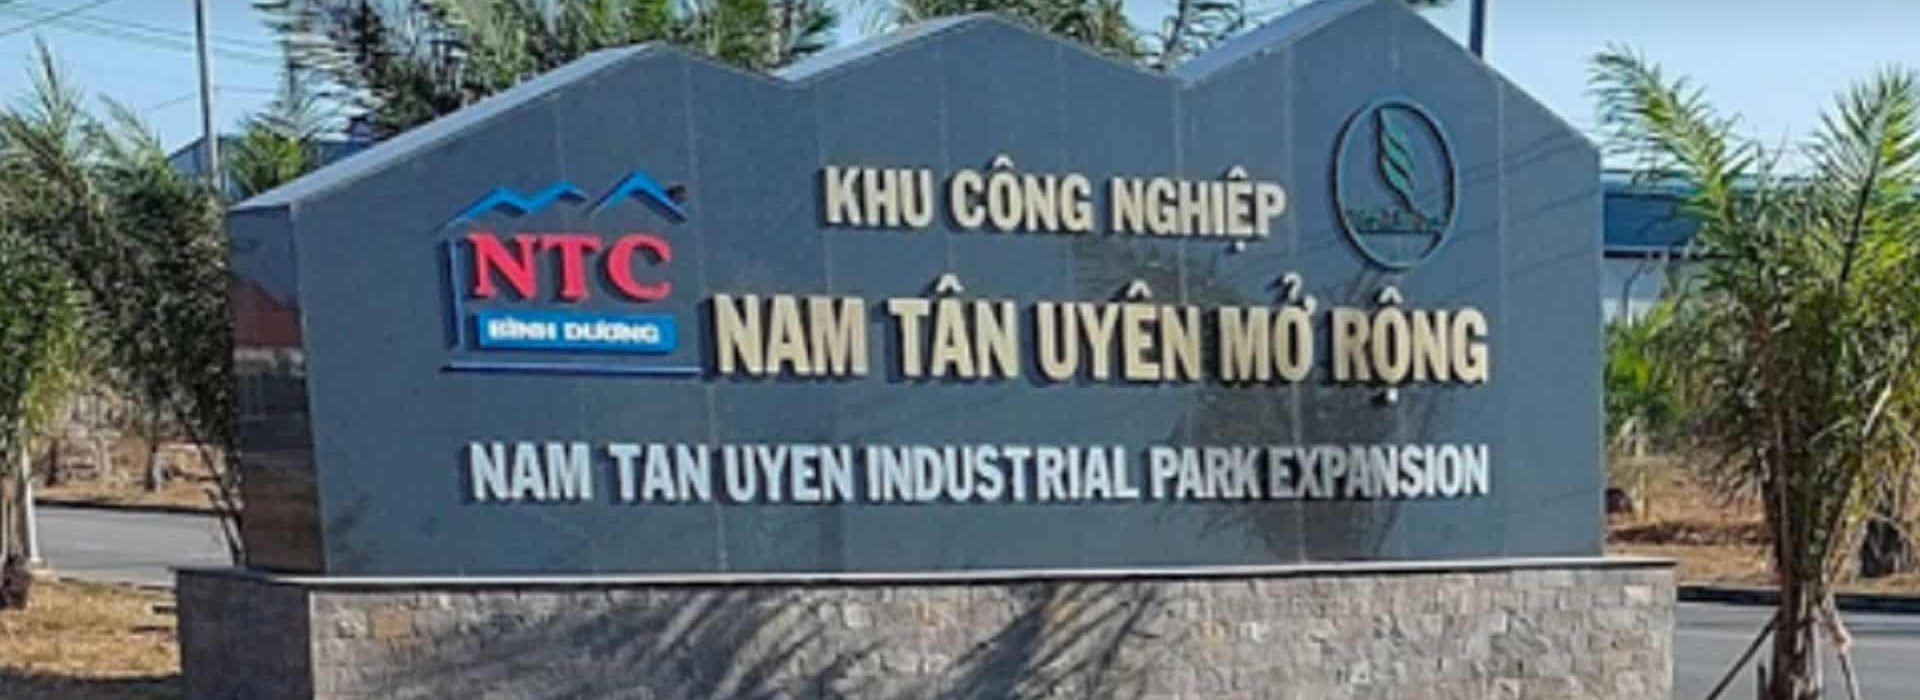 Khu công nghiệp Nam Tân Uyên được mở rộng nhận được nguồn vốn FDI tăng cao